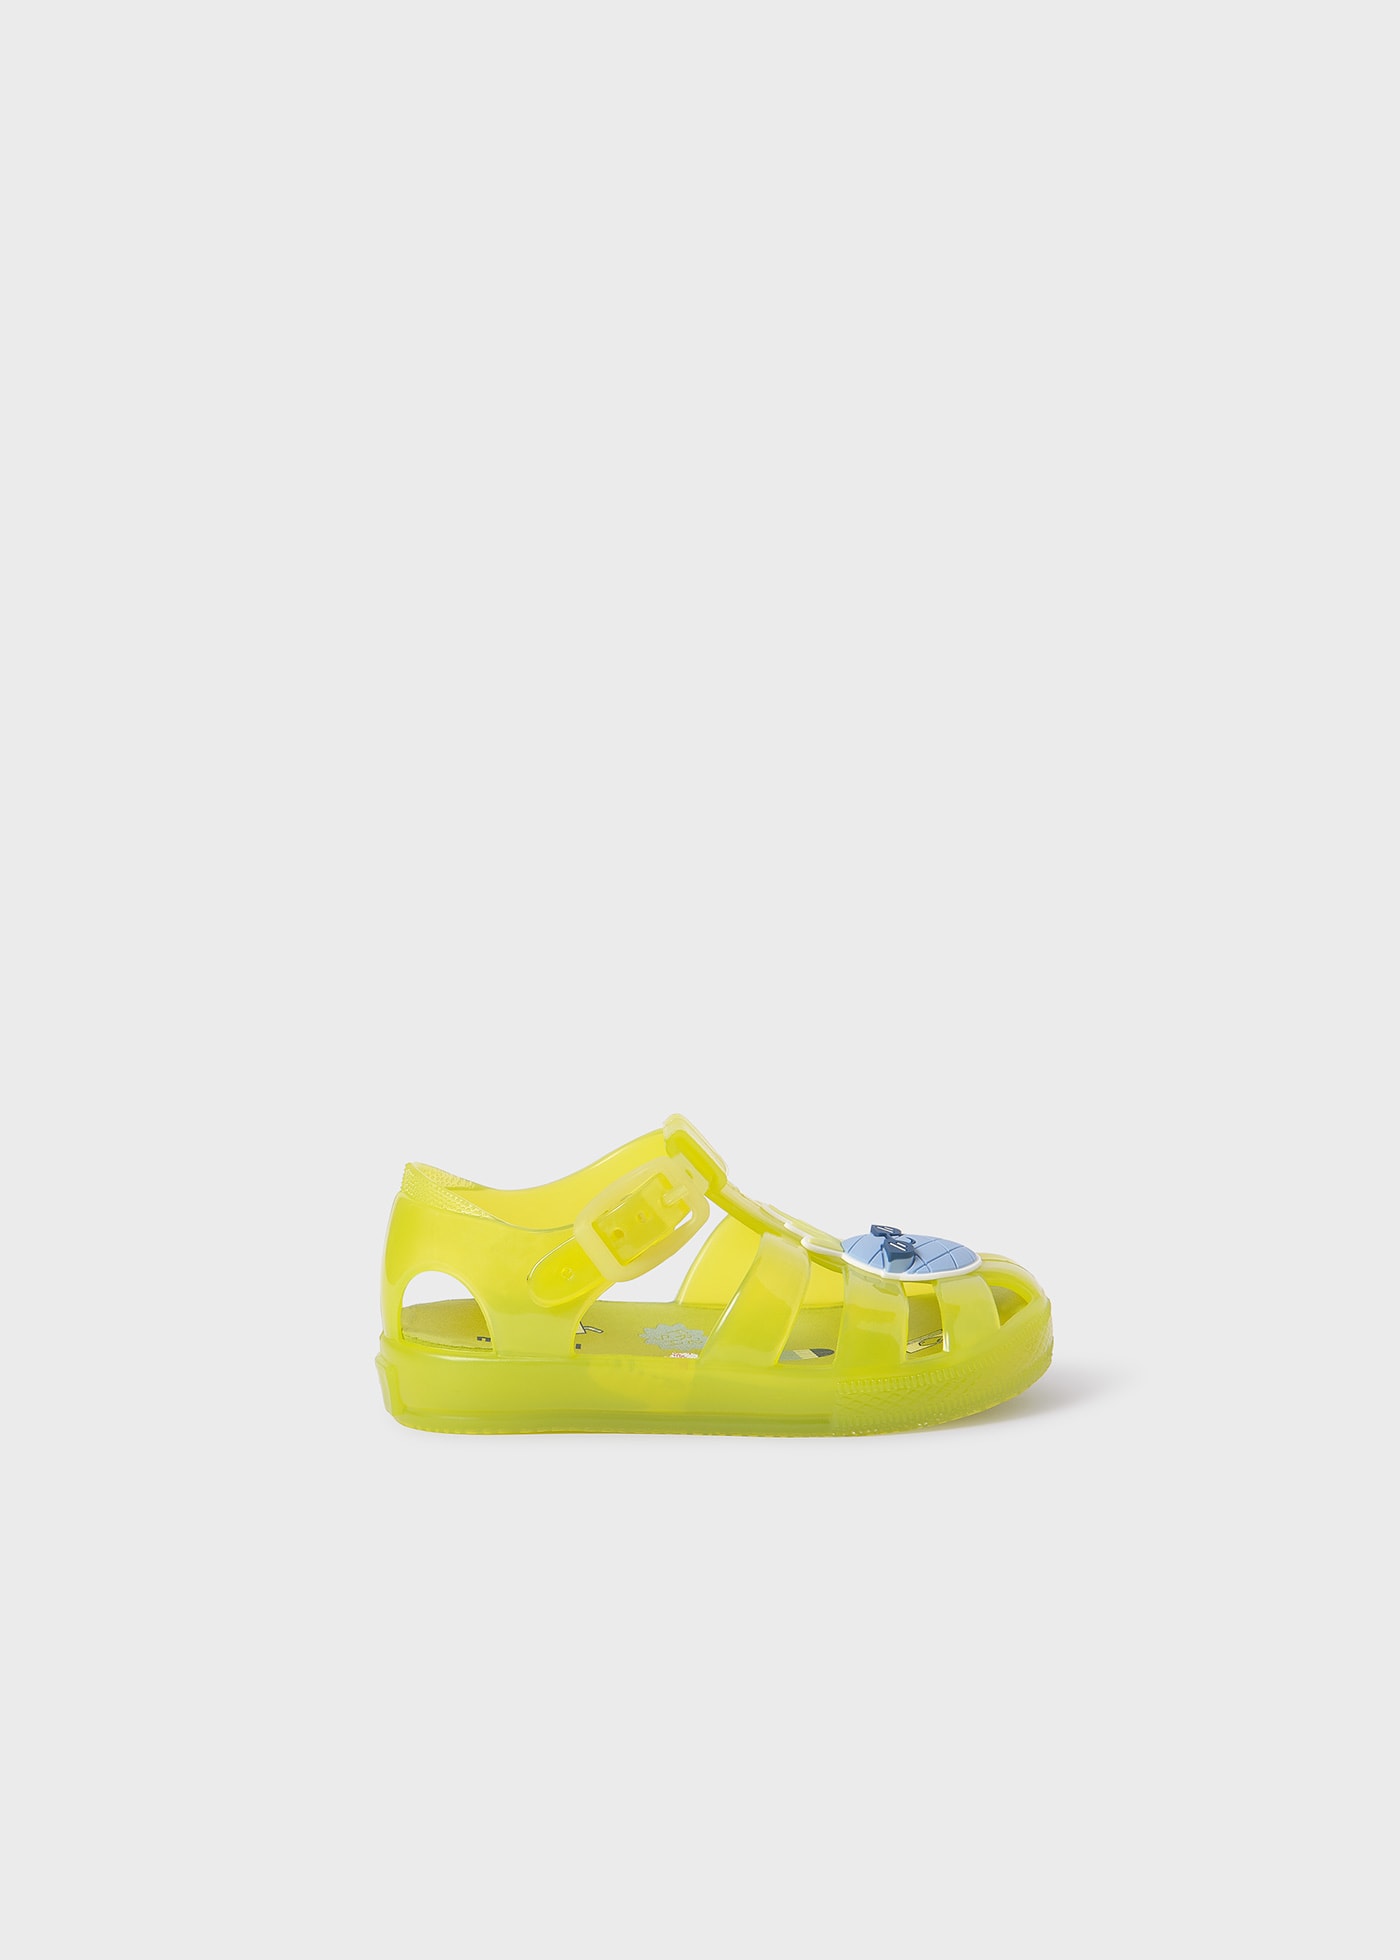 Baby Beach Sandals